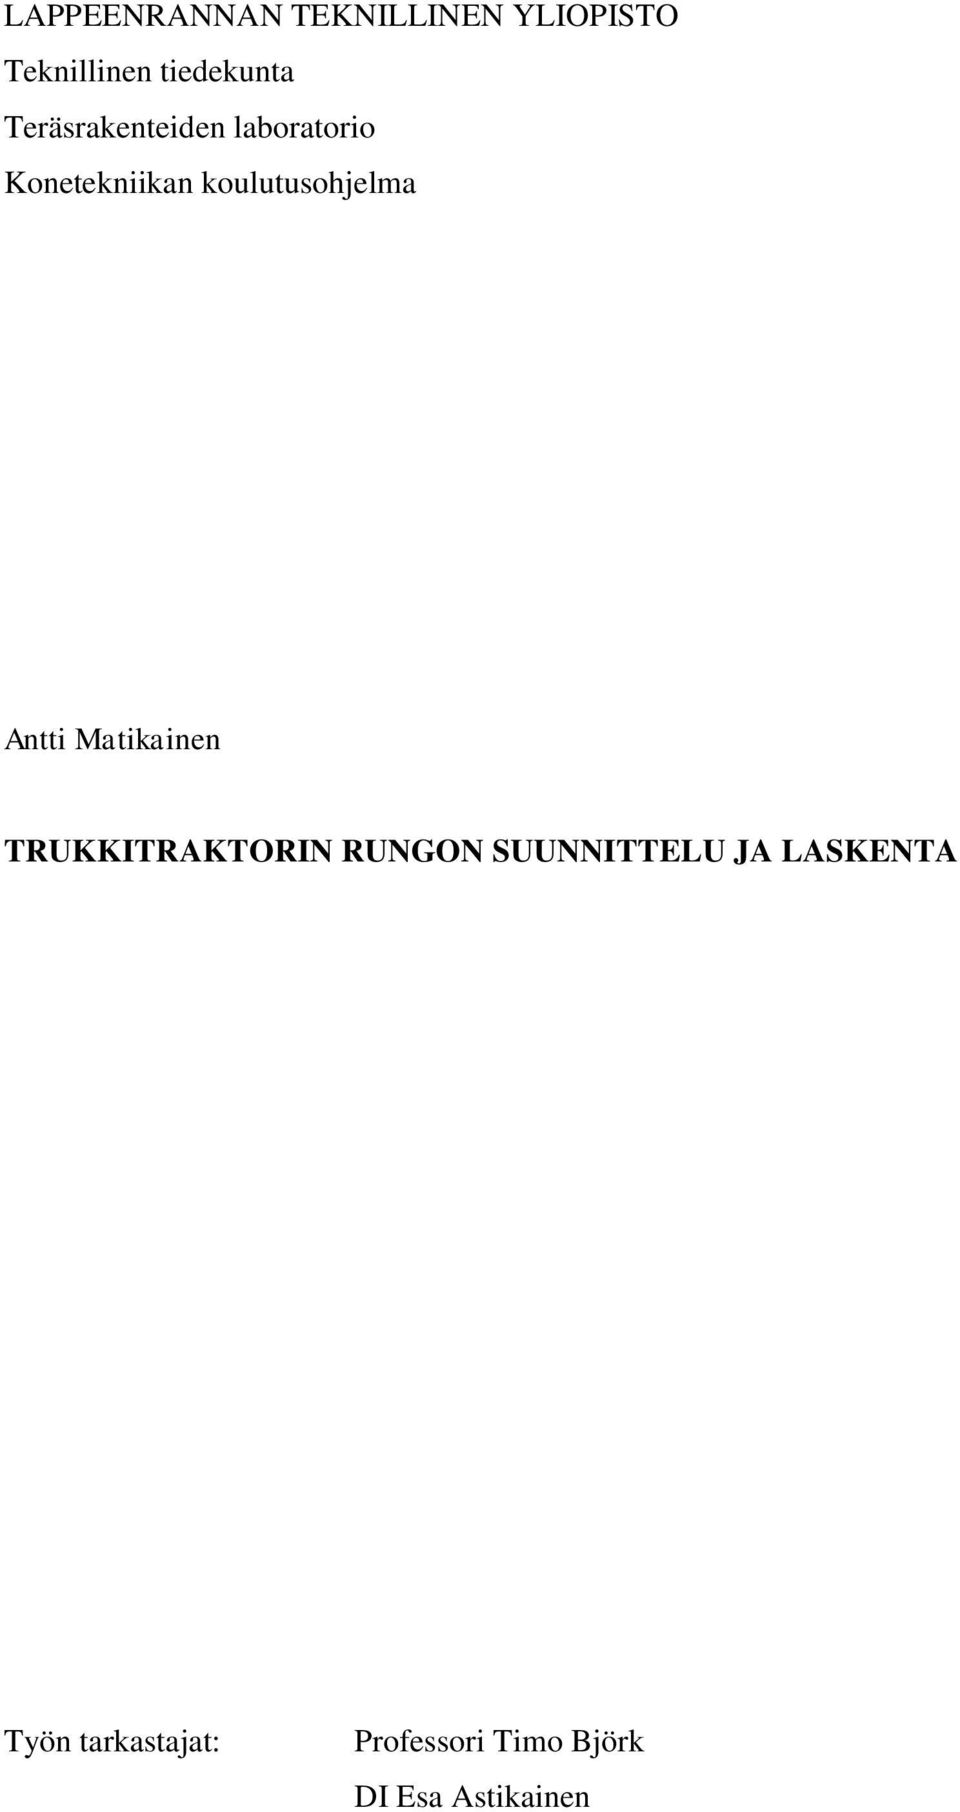 Antti Matikainen TRUKKITRAKTORIN RUNGON SUUNNITTELU JA